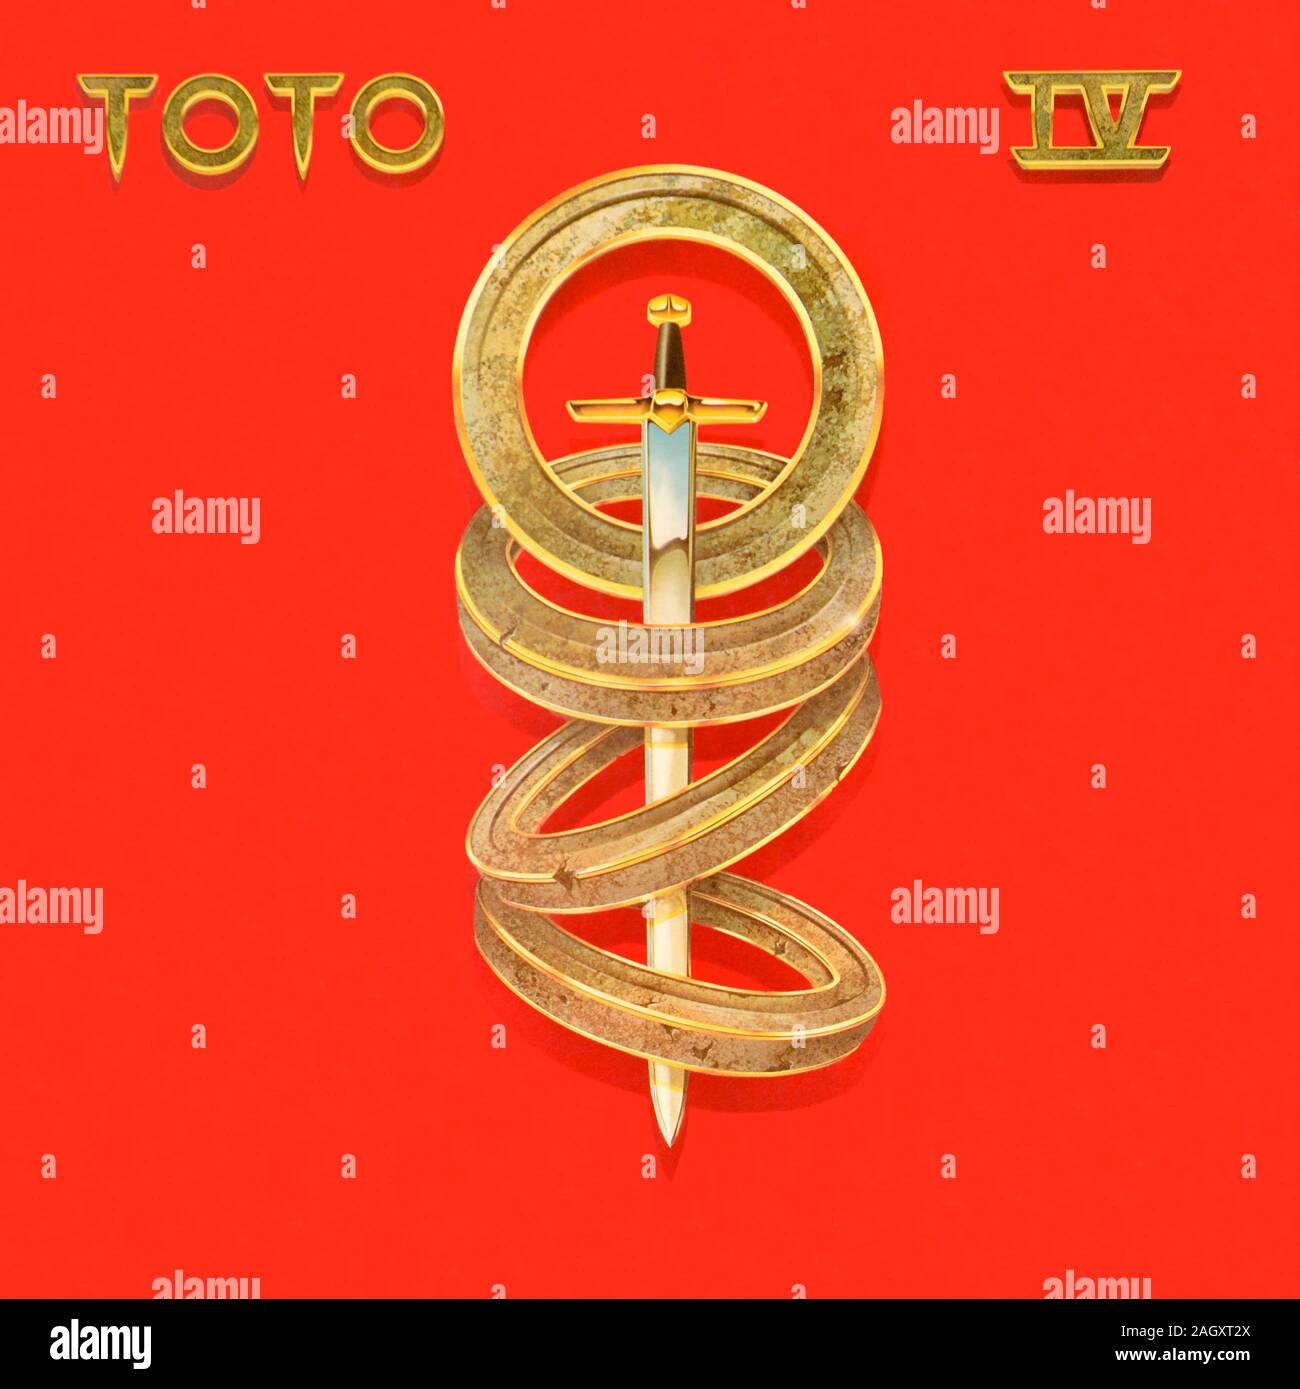 Toto - original Vinyl Album Cover - Toto IV - 1982 Stockfoto